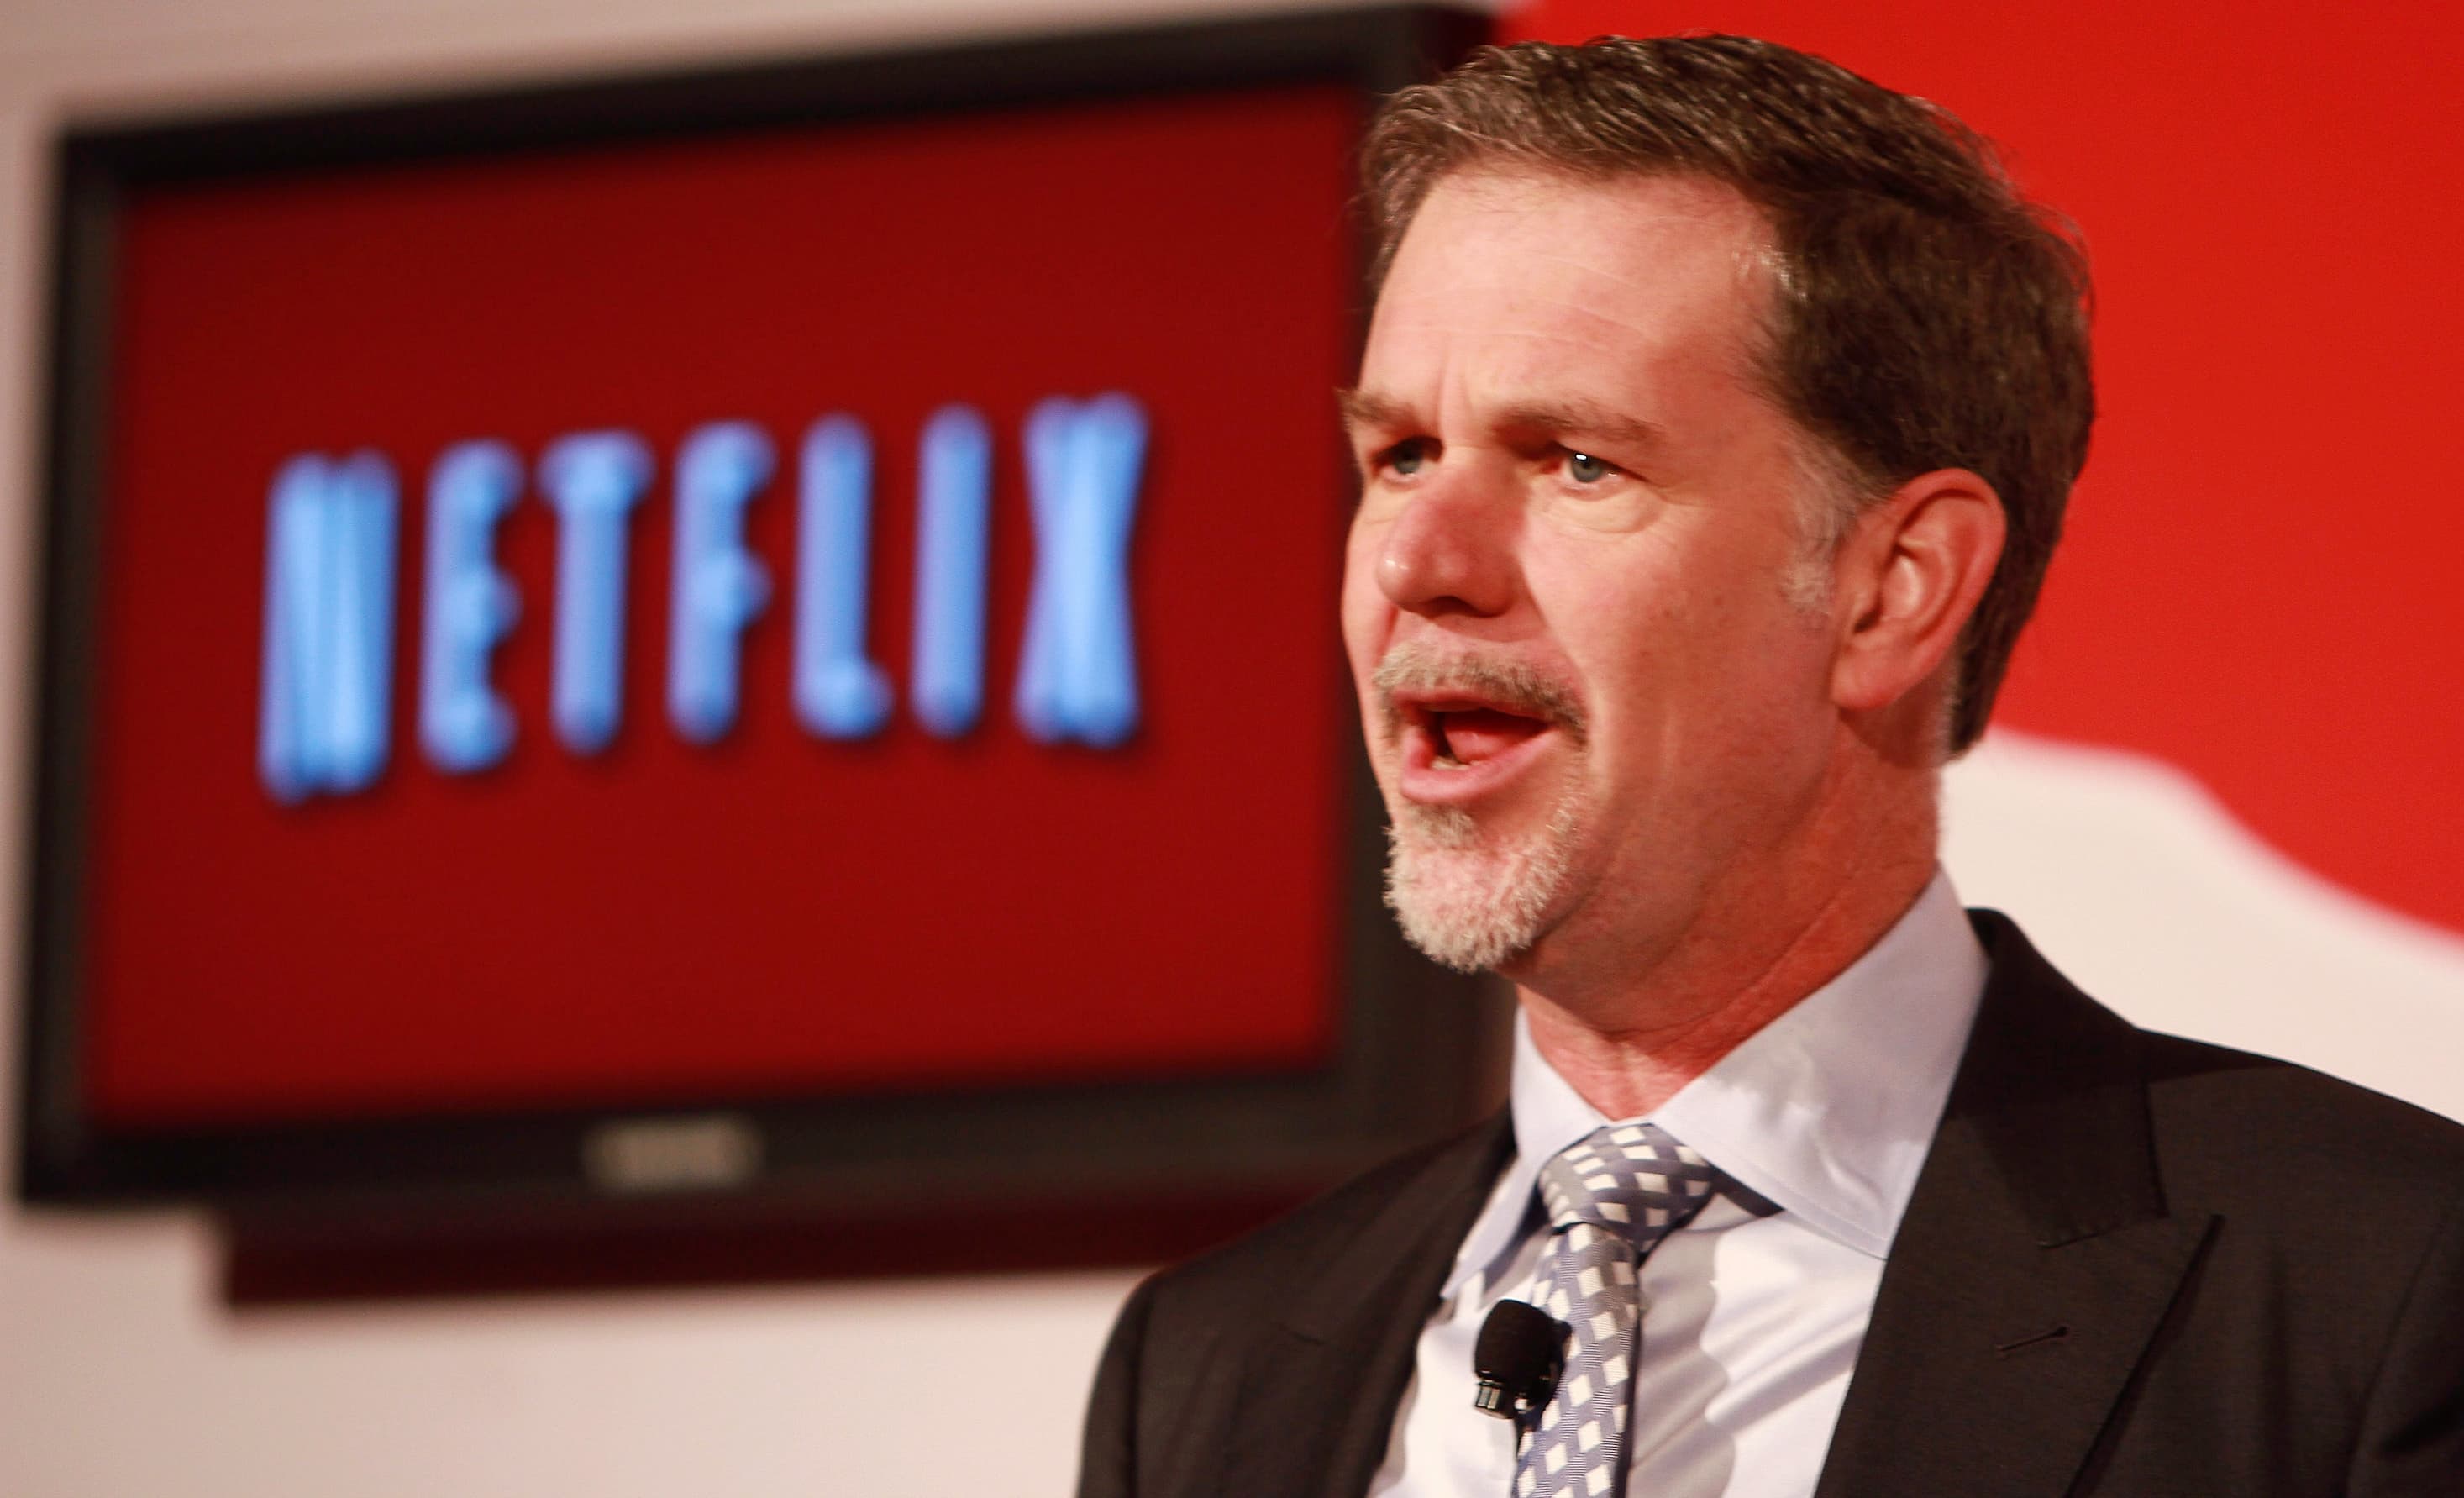 CEOs da Netflix defendem o cancelamento de séries, diz site